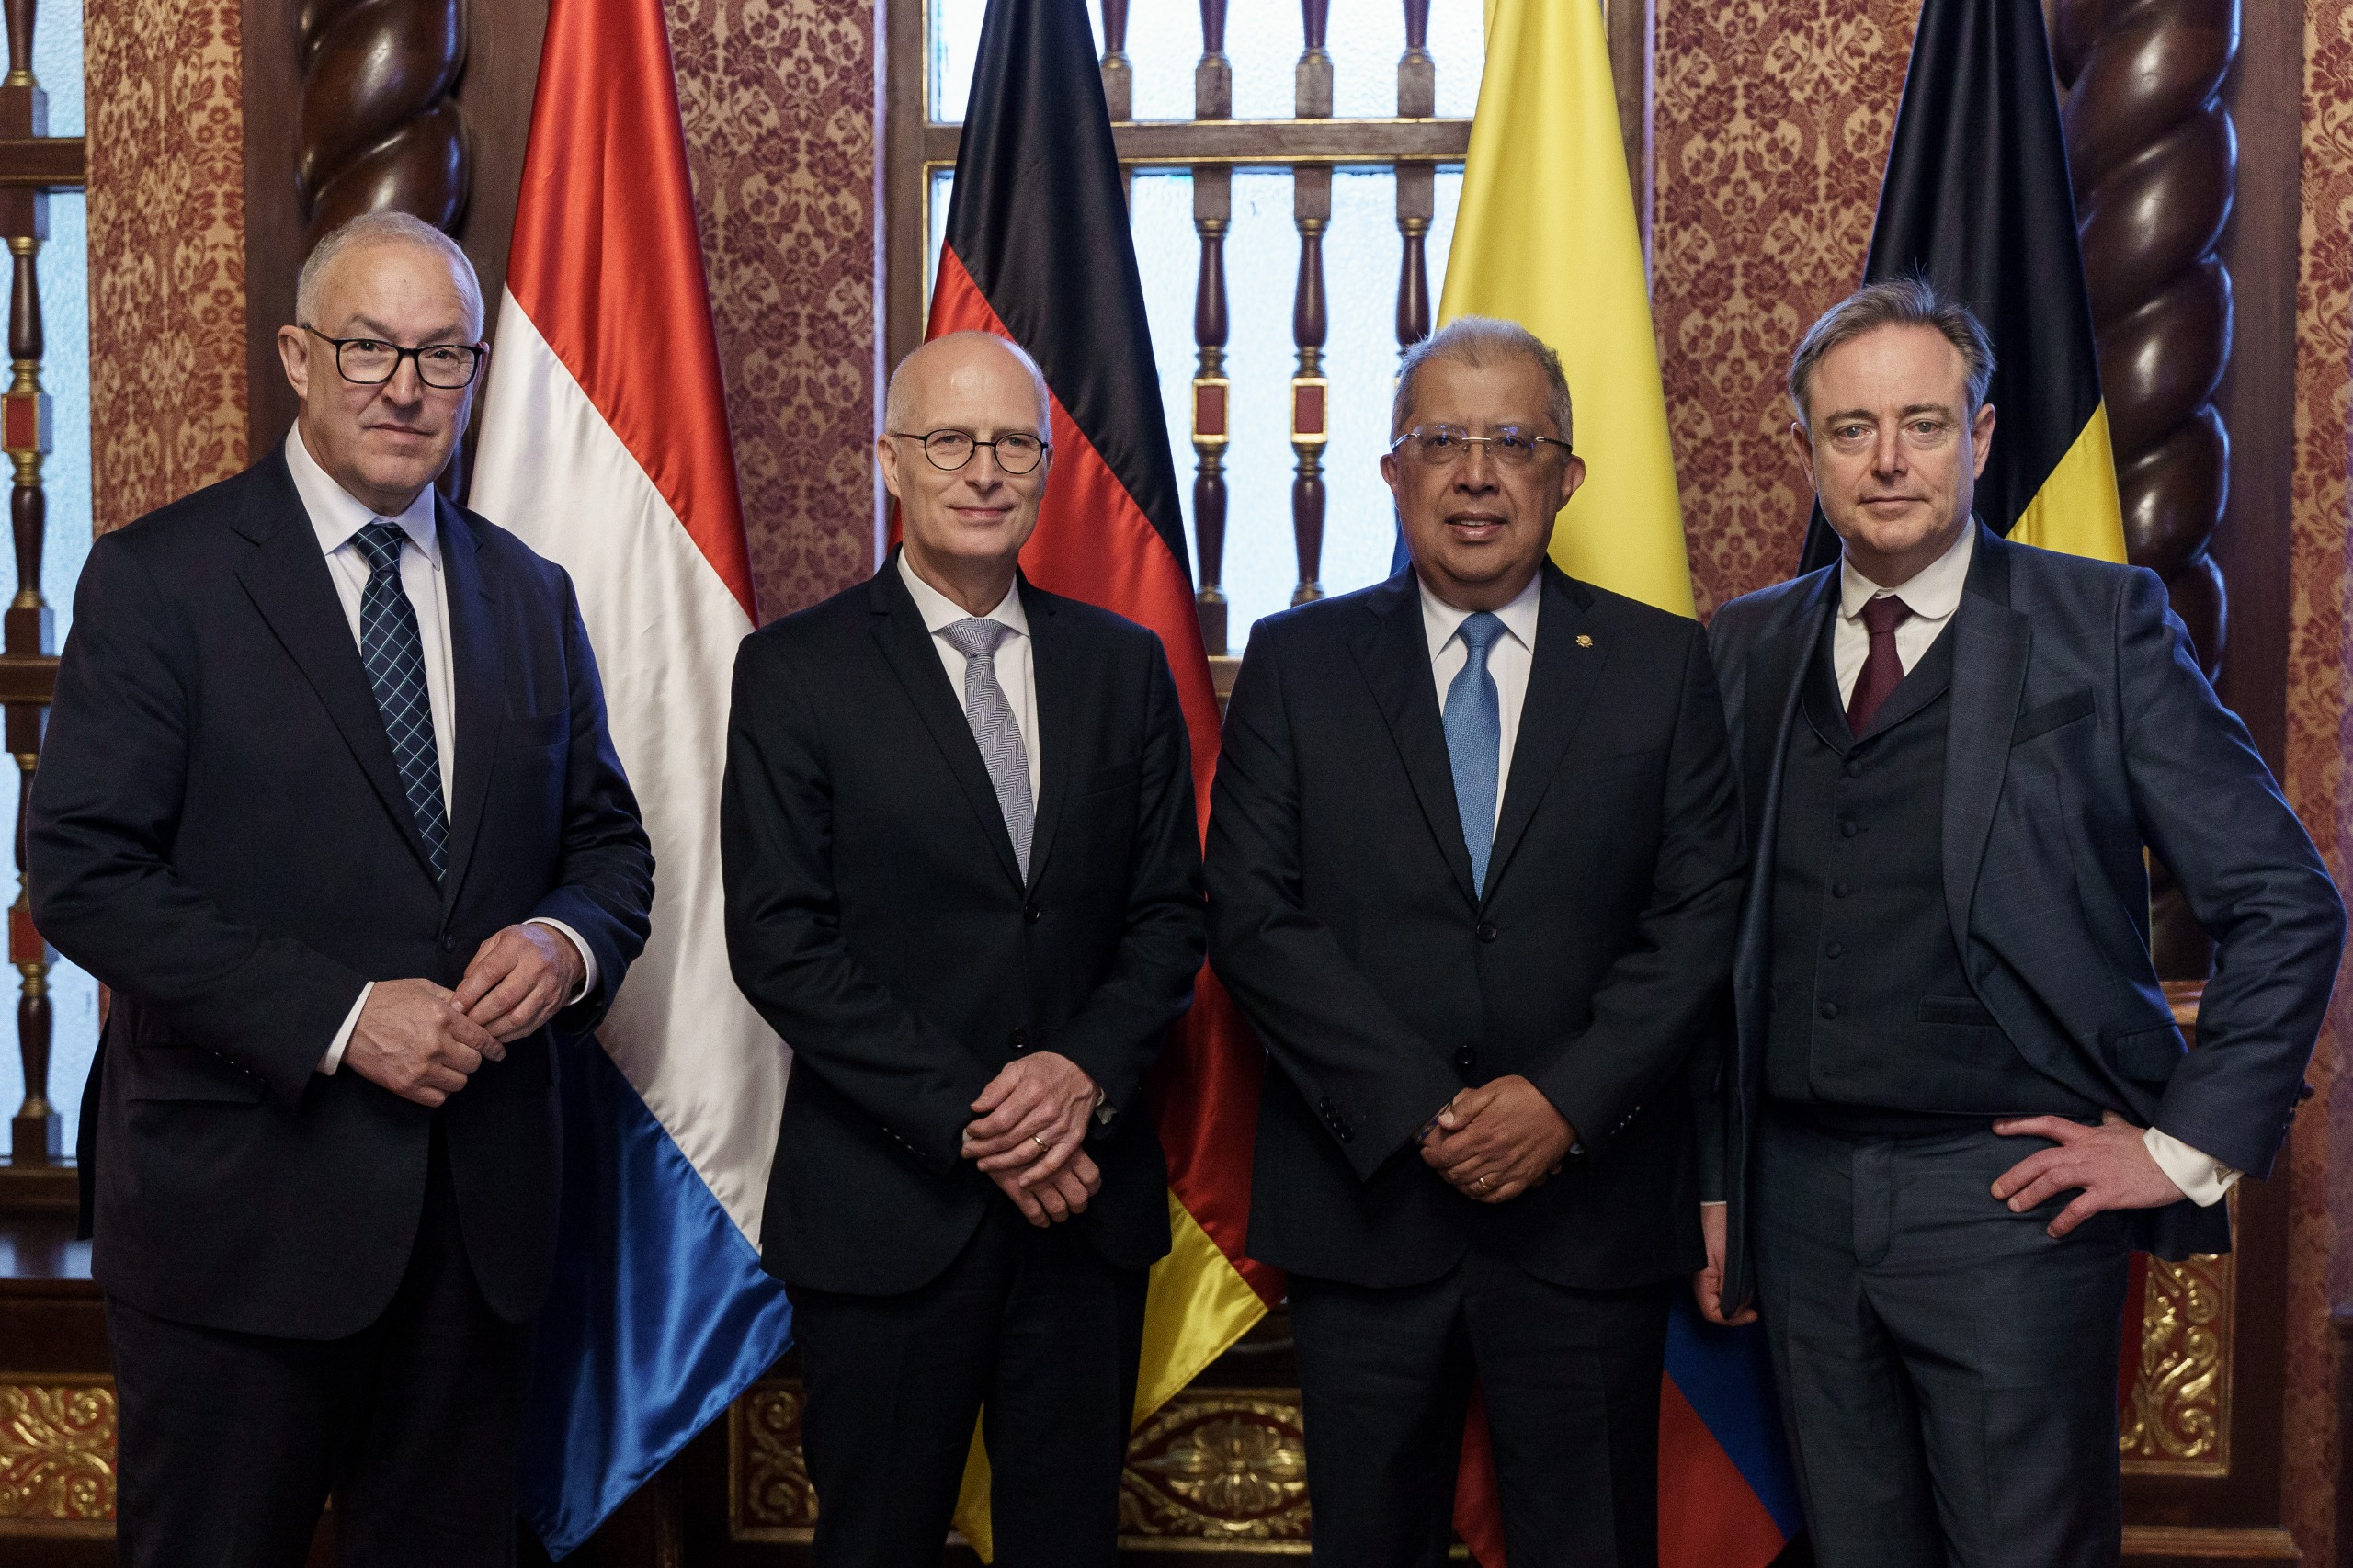 Alcaldes de los principales puertos del norte Europa destacaron oportunidades comerciales y de trabajo conjunto con Colombia